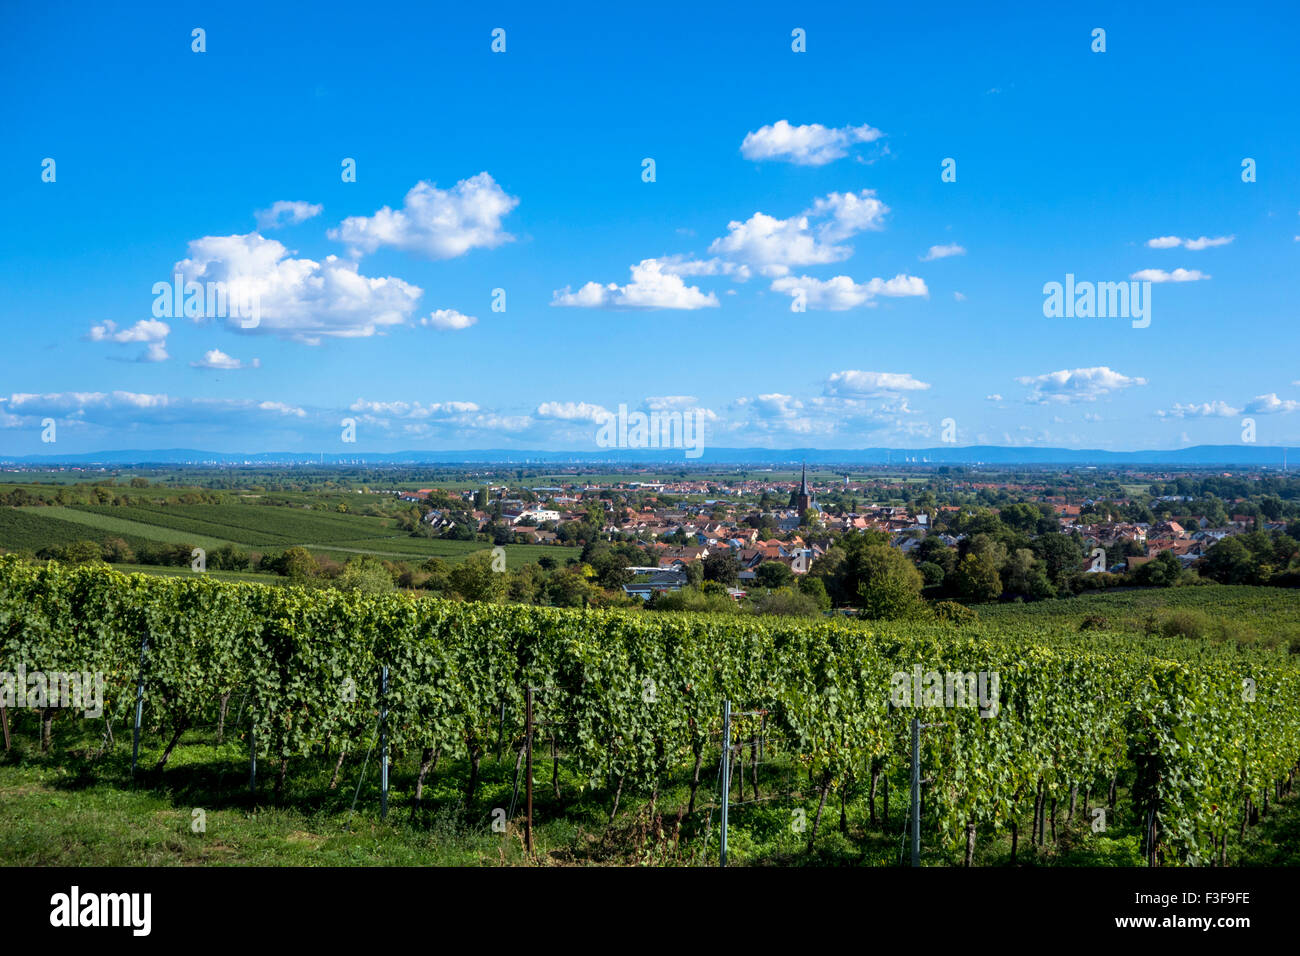 Forst in Rhineland-Palatinate, GErmany Stock Photo